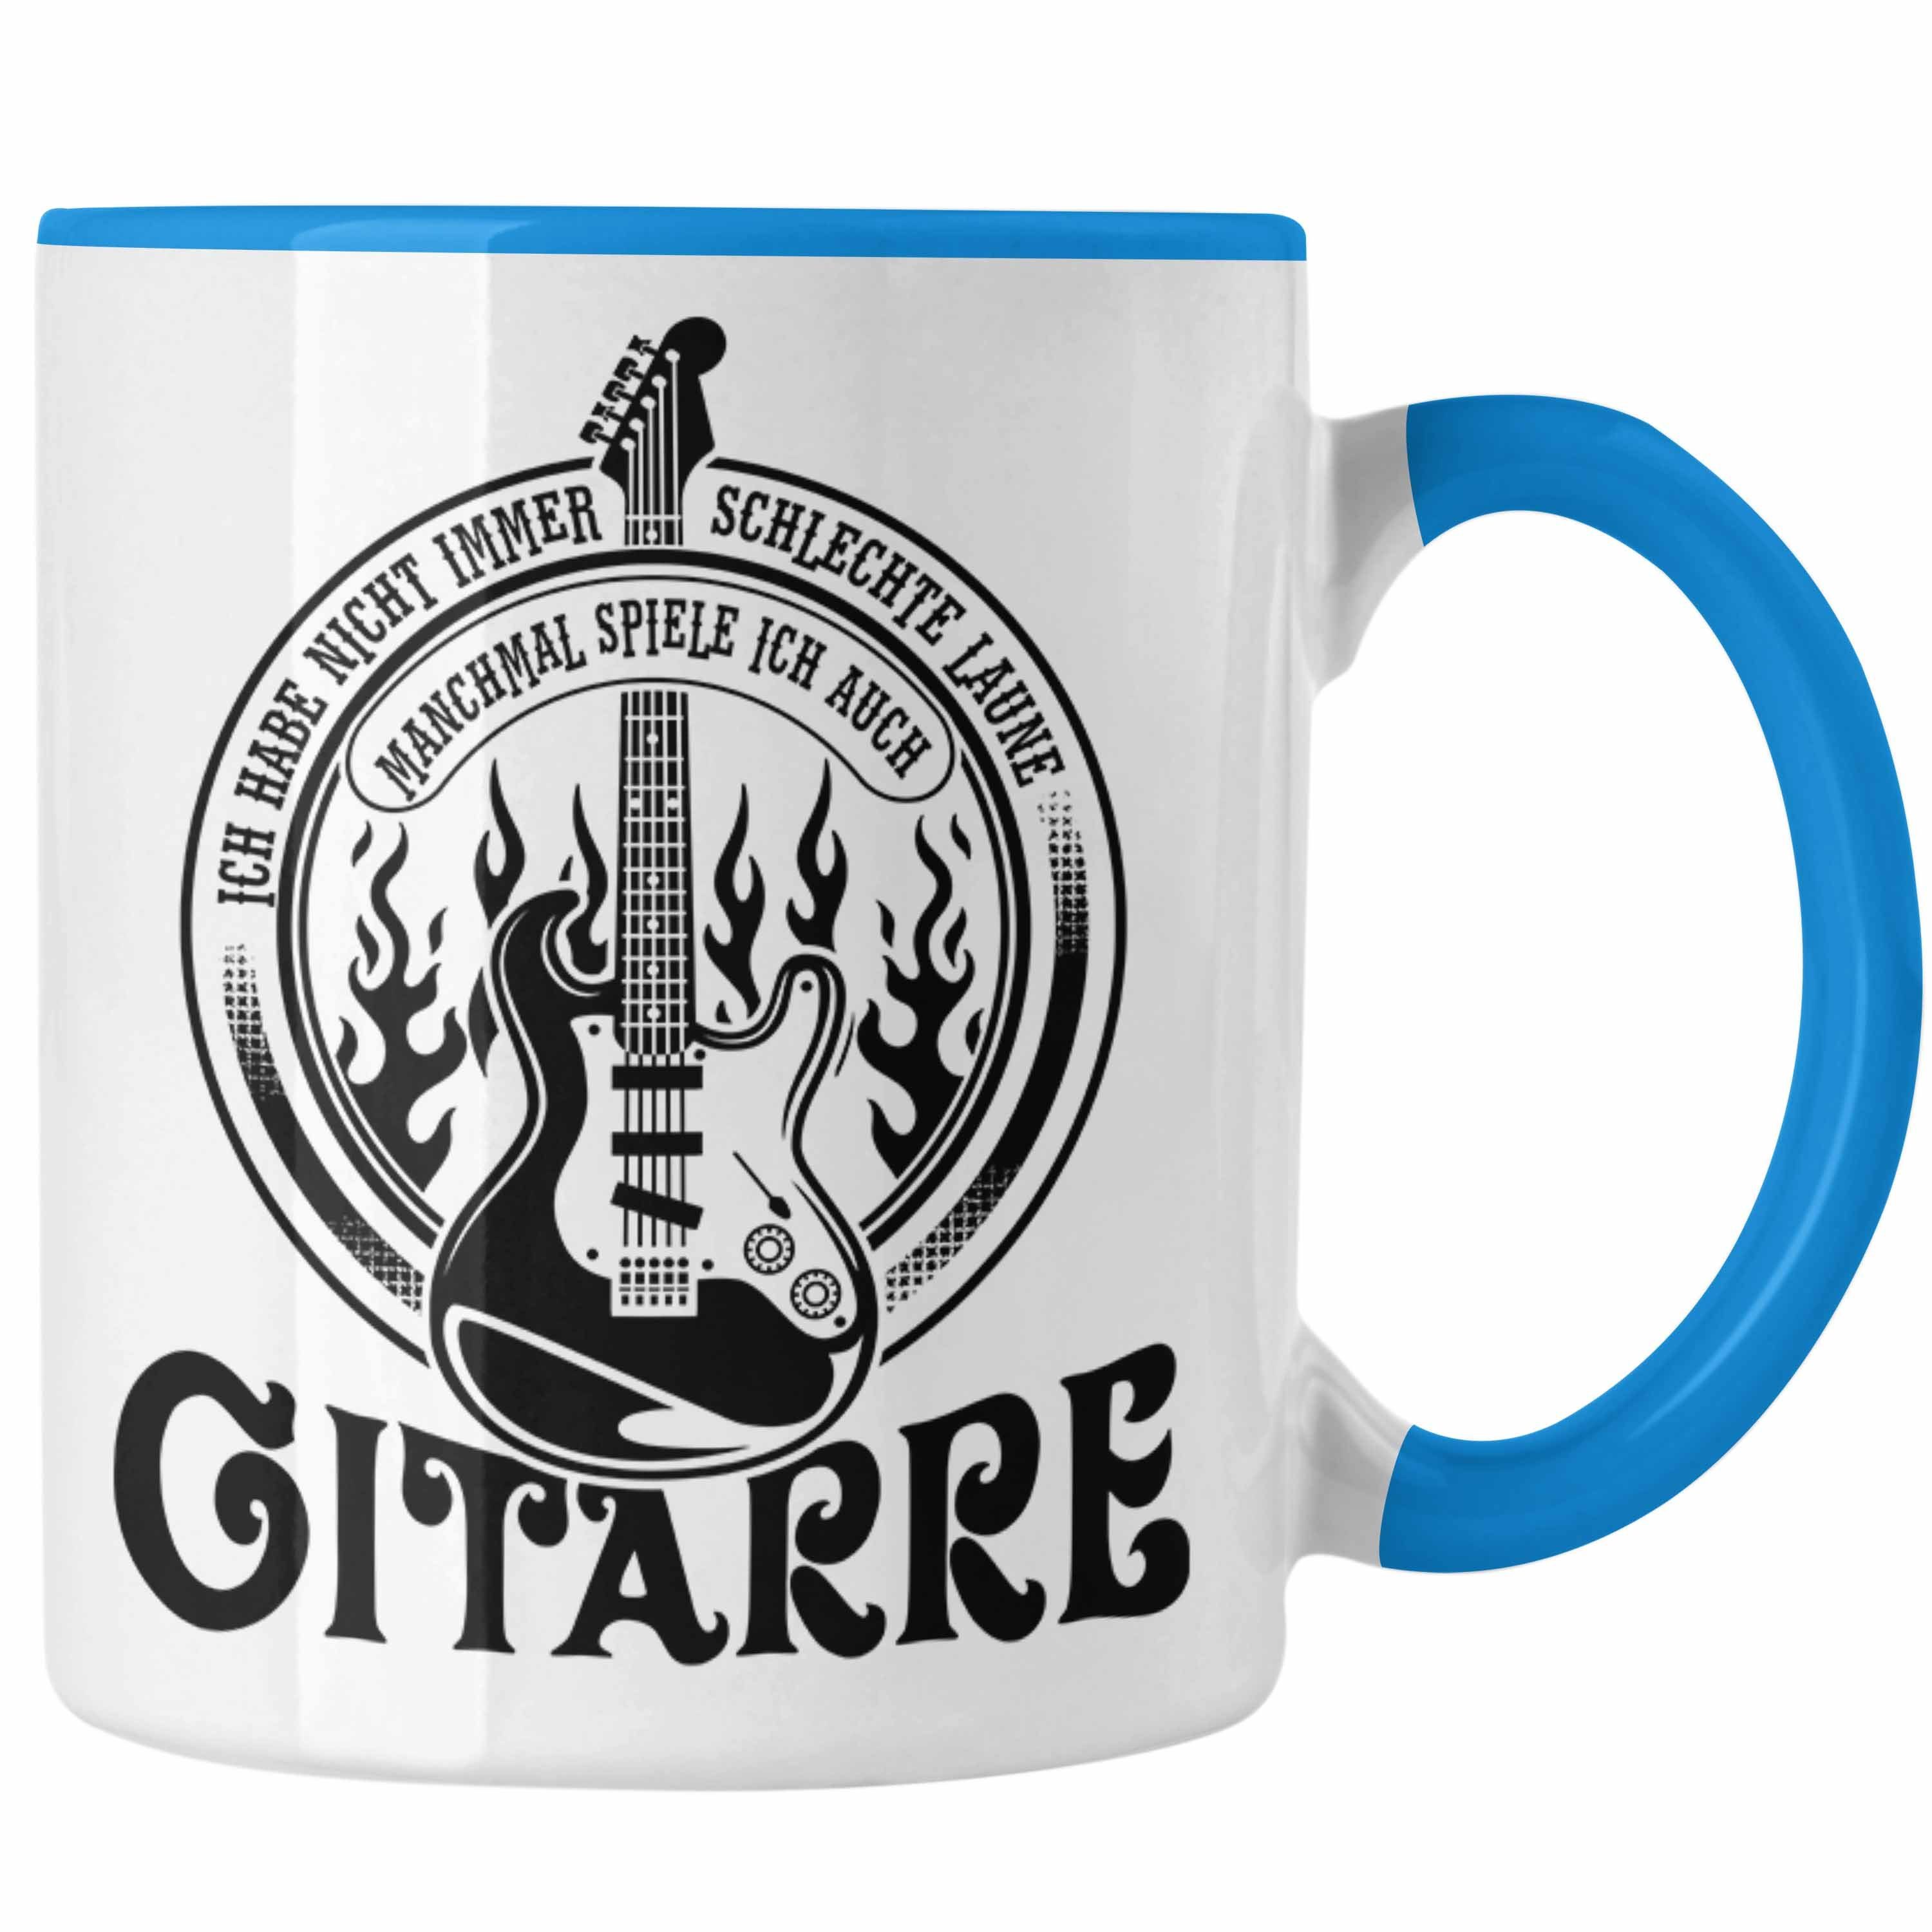 Trendation Tasse Gitarrenspieler Tasse Geschenk Gitarre Geschenkidee Spruch Kaffee-Bech Blau